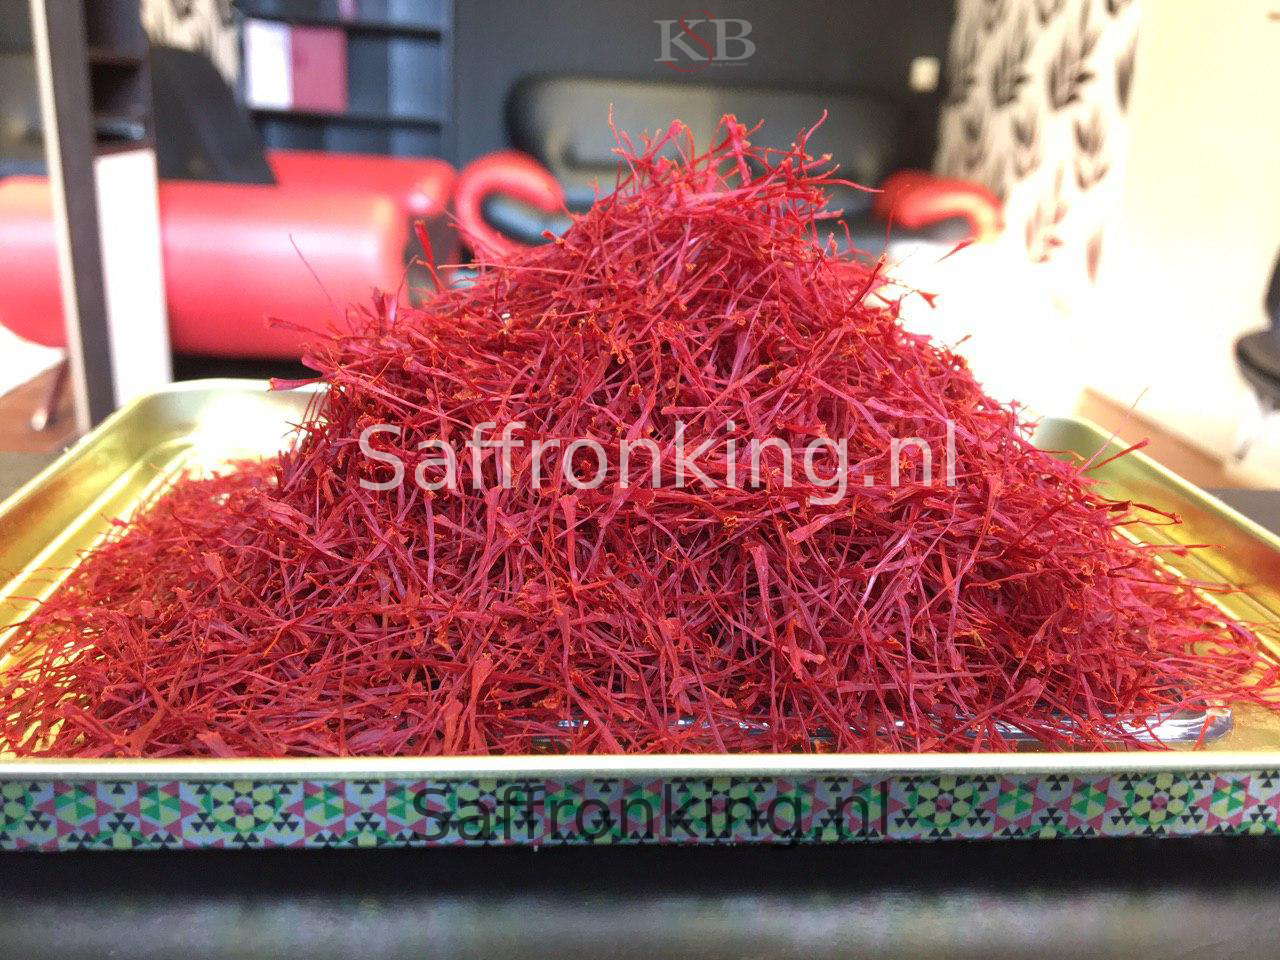 Sale price of bulk saffron in Germany